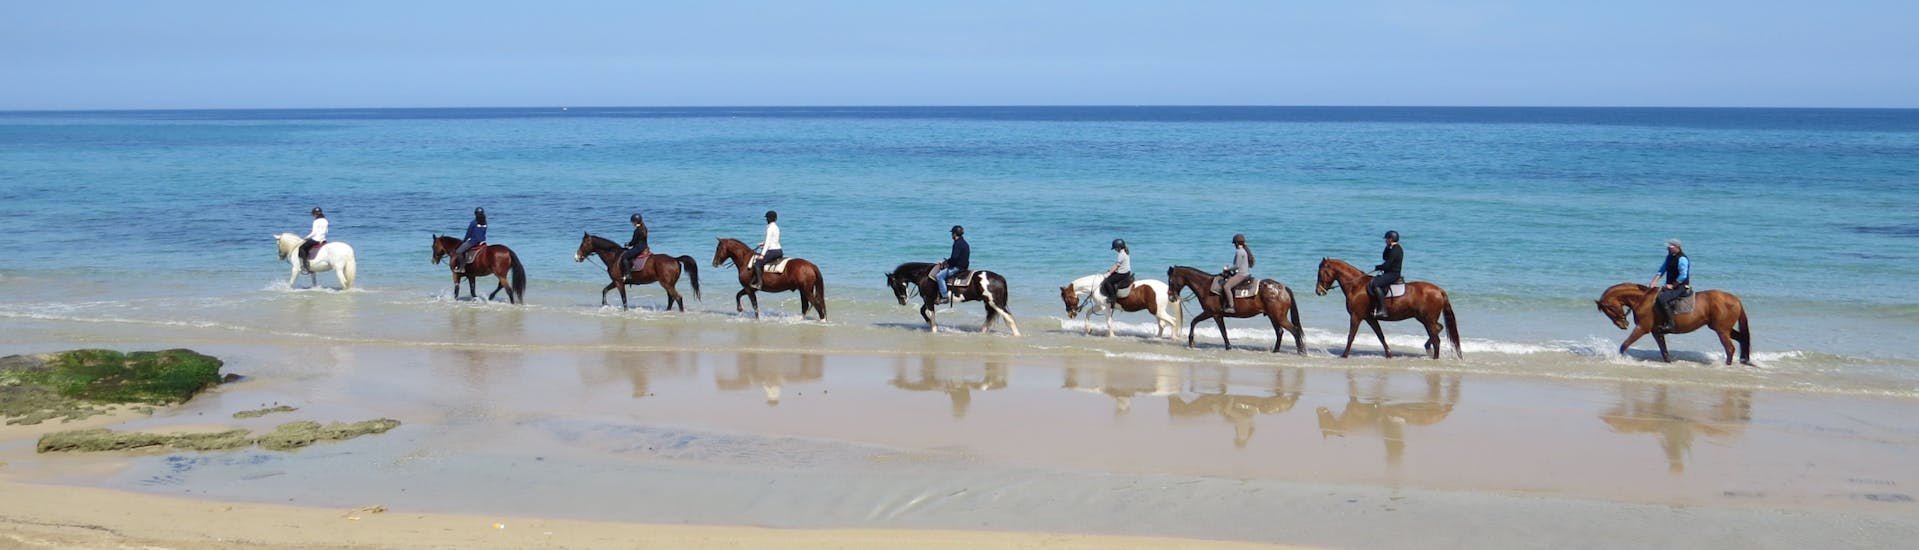 Gruppo di cavalli al passo sulla battigia di una spiaggia durante la Passeggiata a Cavallo nel Parco Naturale delle Dune Costiere con Pugliamare.